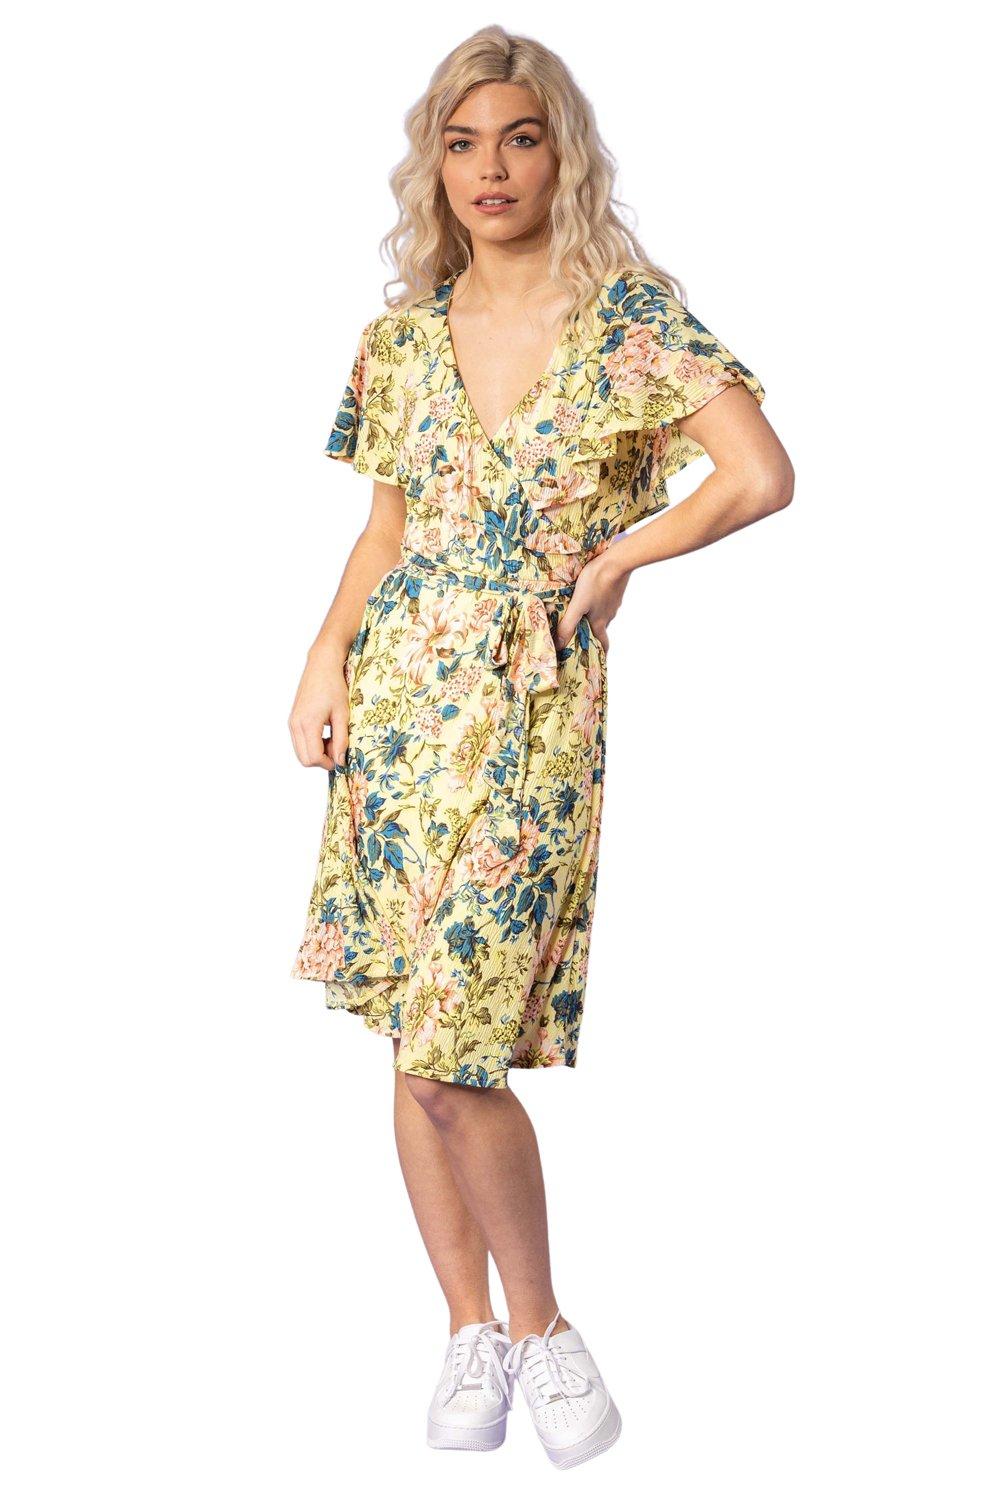 Платье с поясом и рукавами с цветочным принтом и оборками Dusk, желтый платье deniza с цветочным принтом 44 размер новое